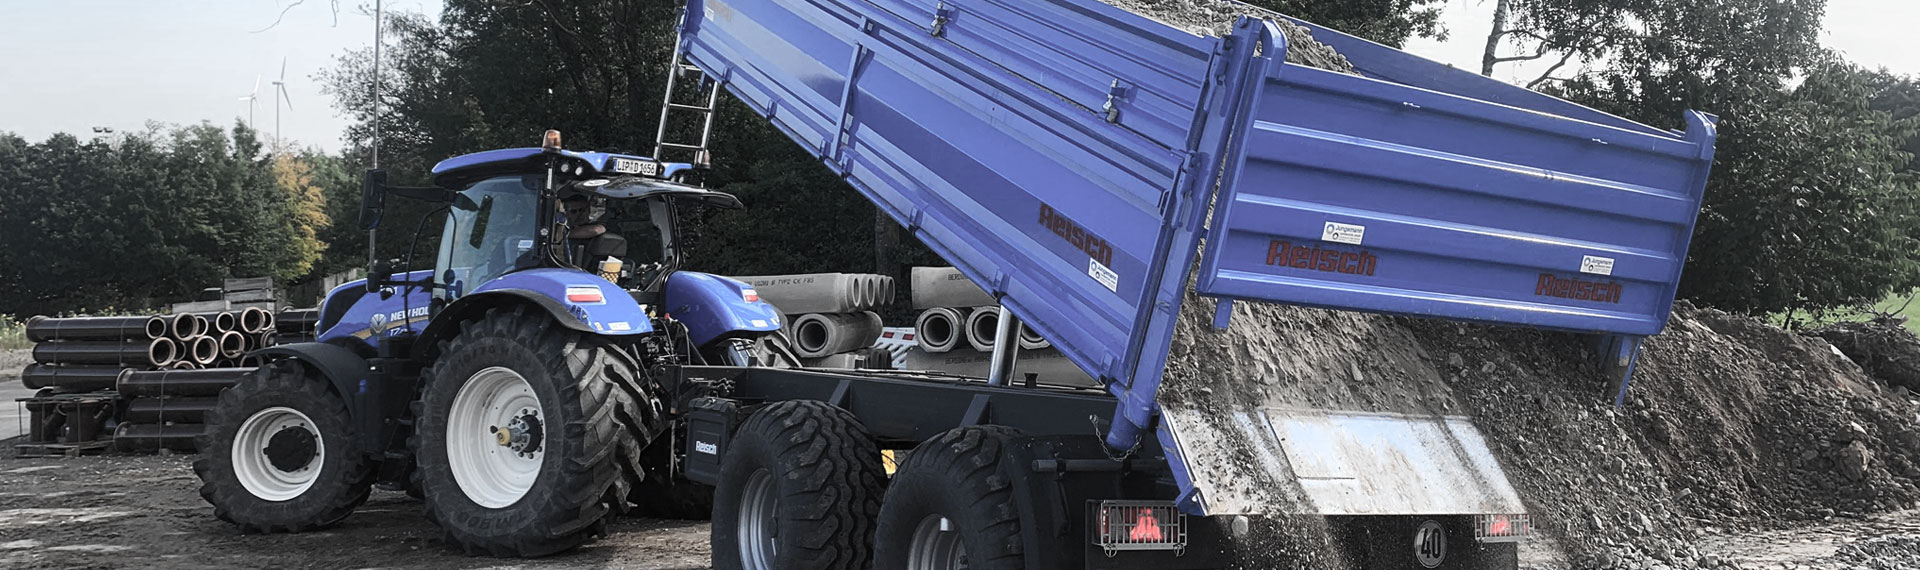 Gövdesi Hardox® sac çelikten yapılmış bir mavi damperli kamyon, taşlardan oluşan yükünü boşaltıyor.